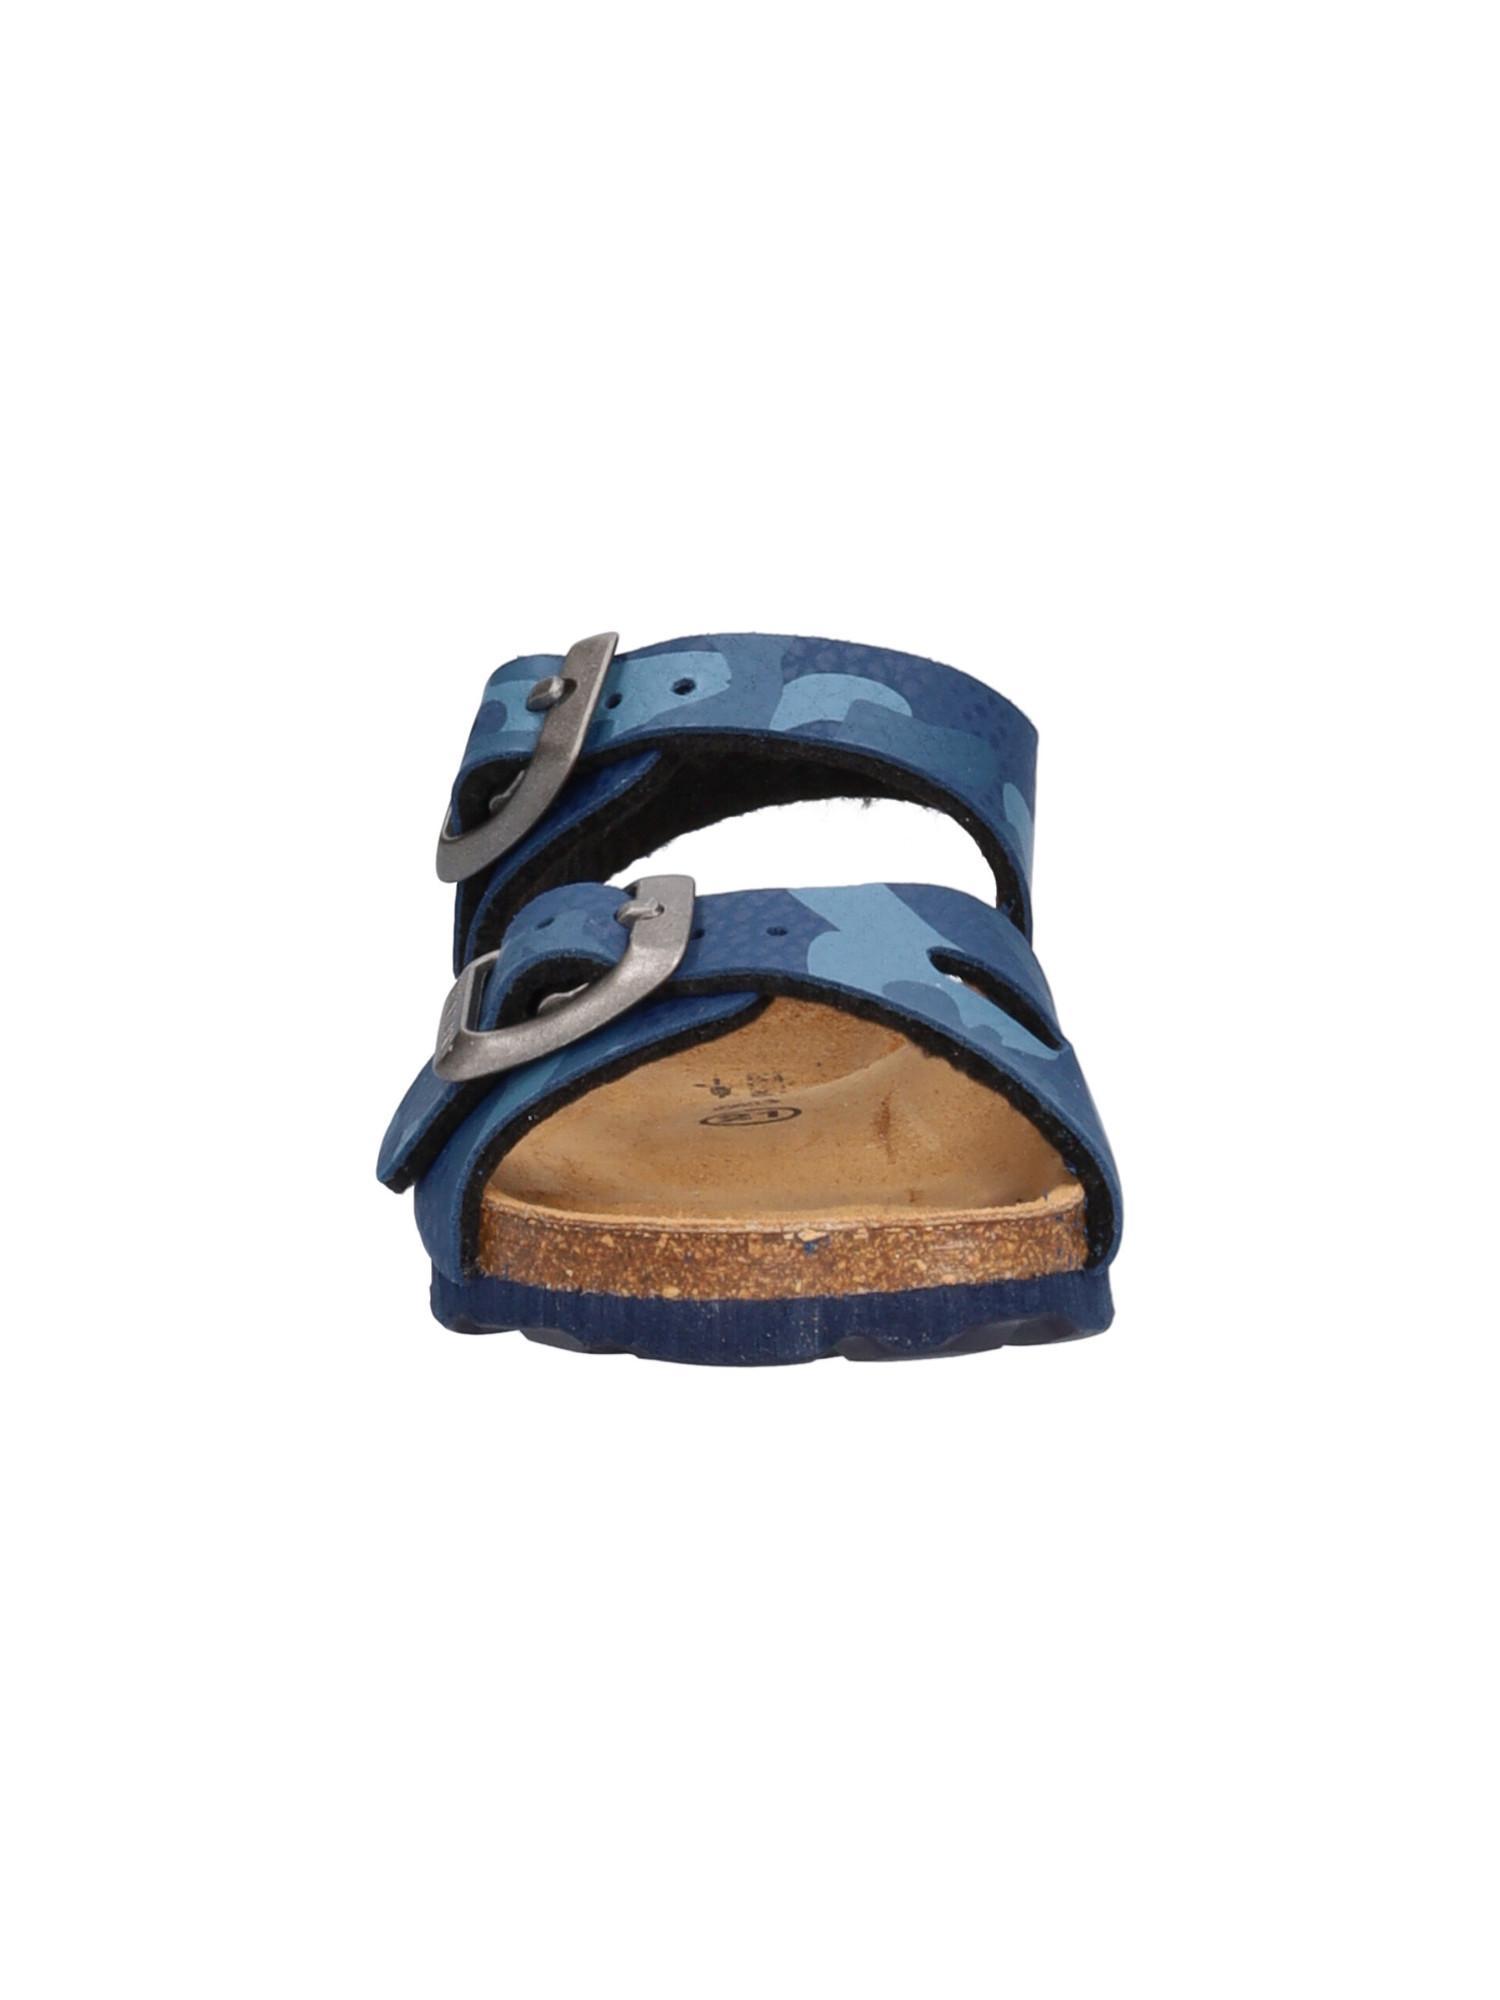 grunland sandalo grunland sb1785 40aria. da bambino, colore blu/militare